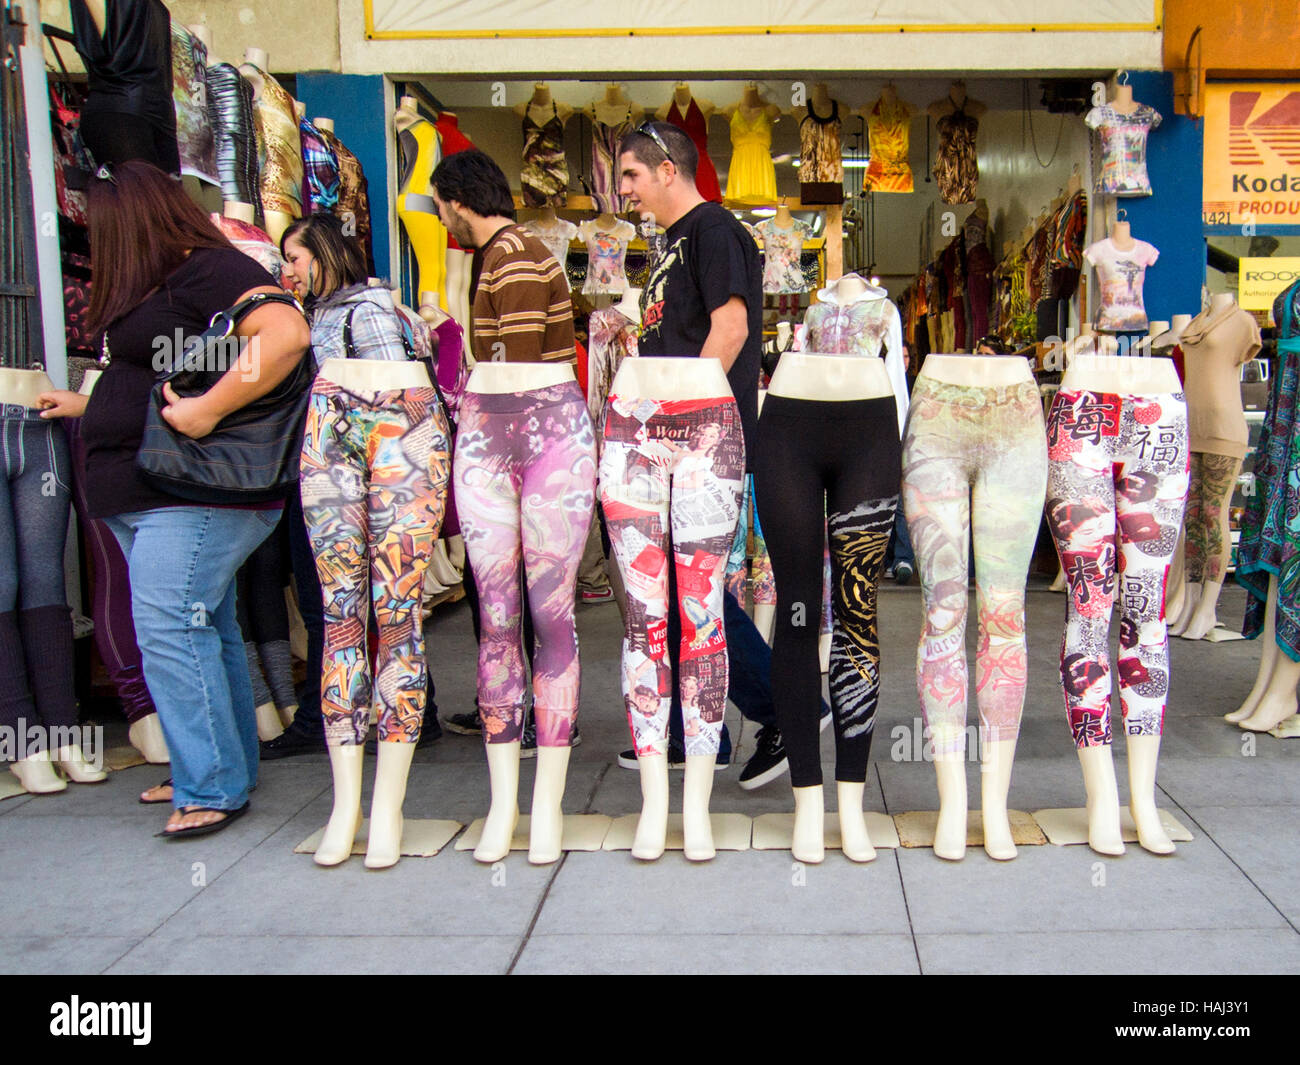 Collants femme humoristique sur l'affichage dans une boutique de trottoir, Santa Monica, Californie, USA Banque D'Images